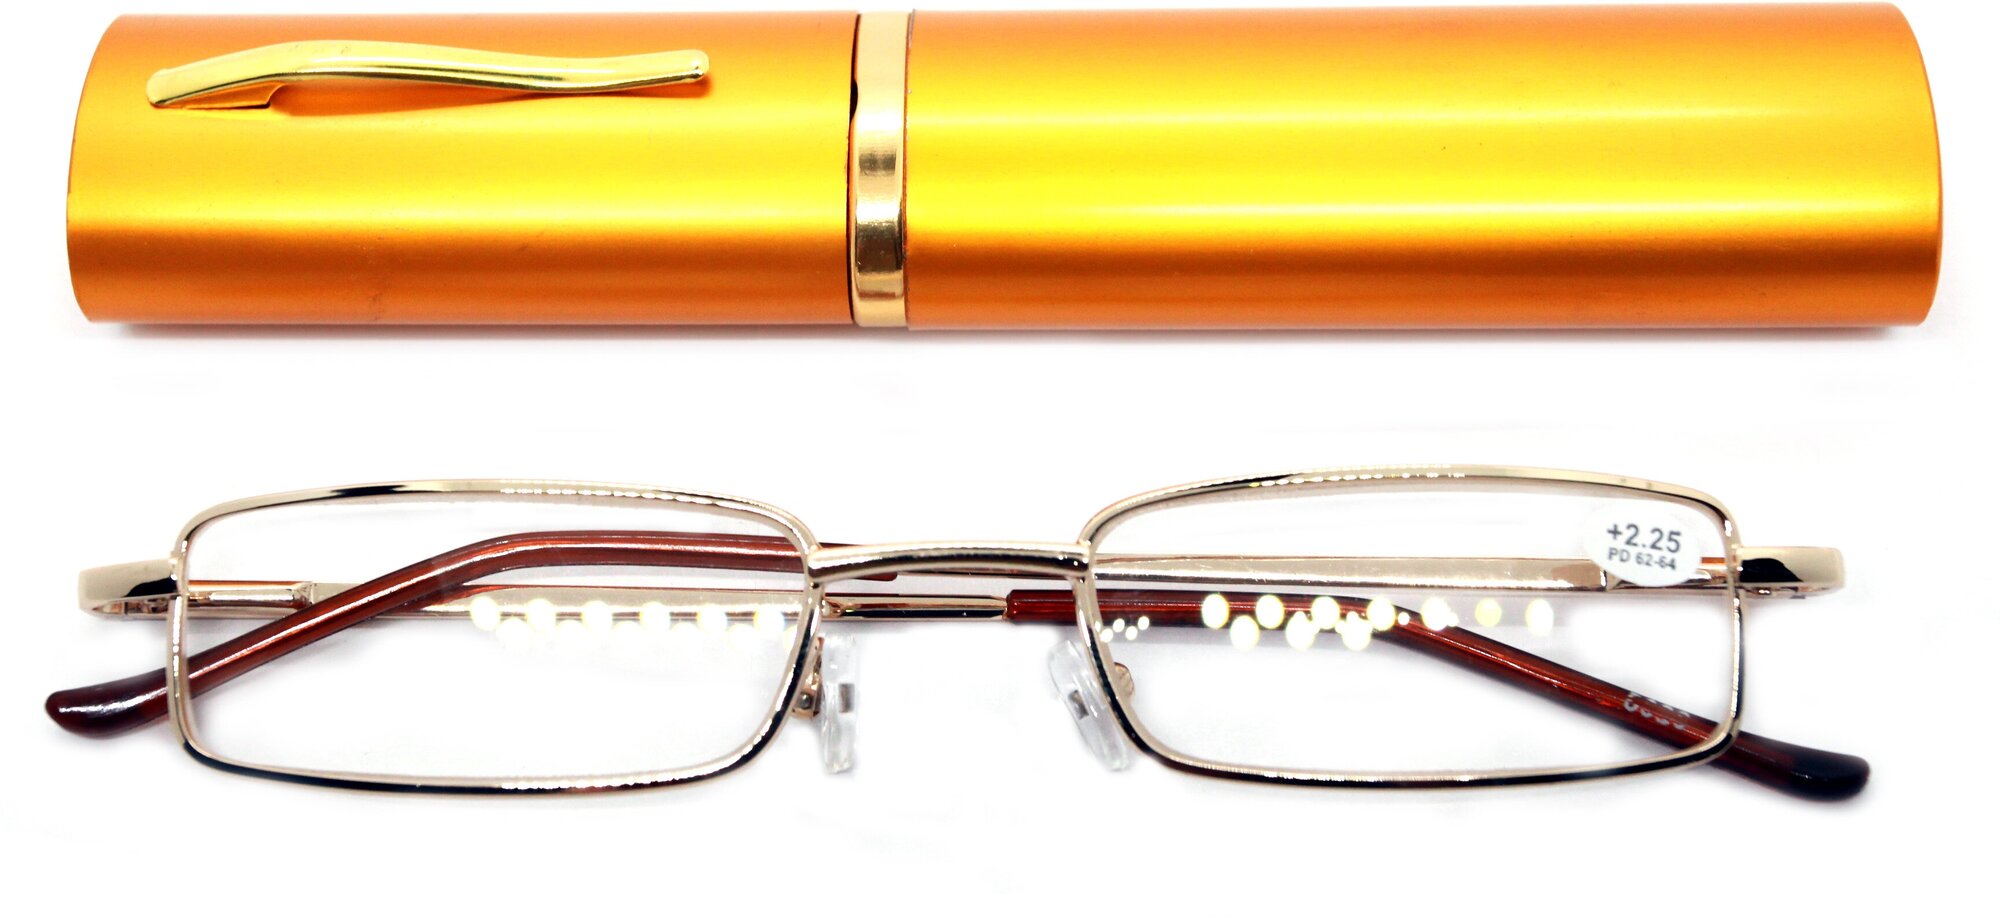 Готовые очки для зрения ручка узкая (+3.25) цвет золотой, РЦ 62-64